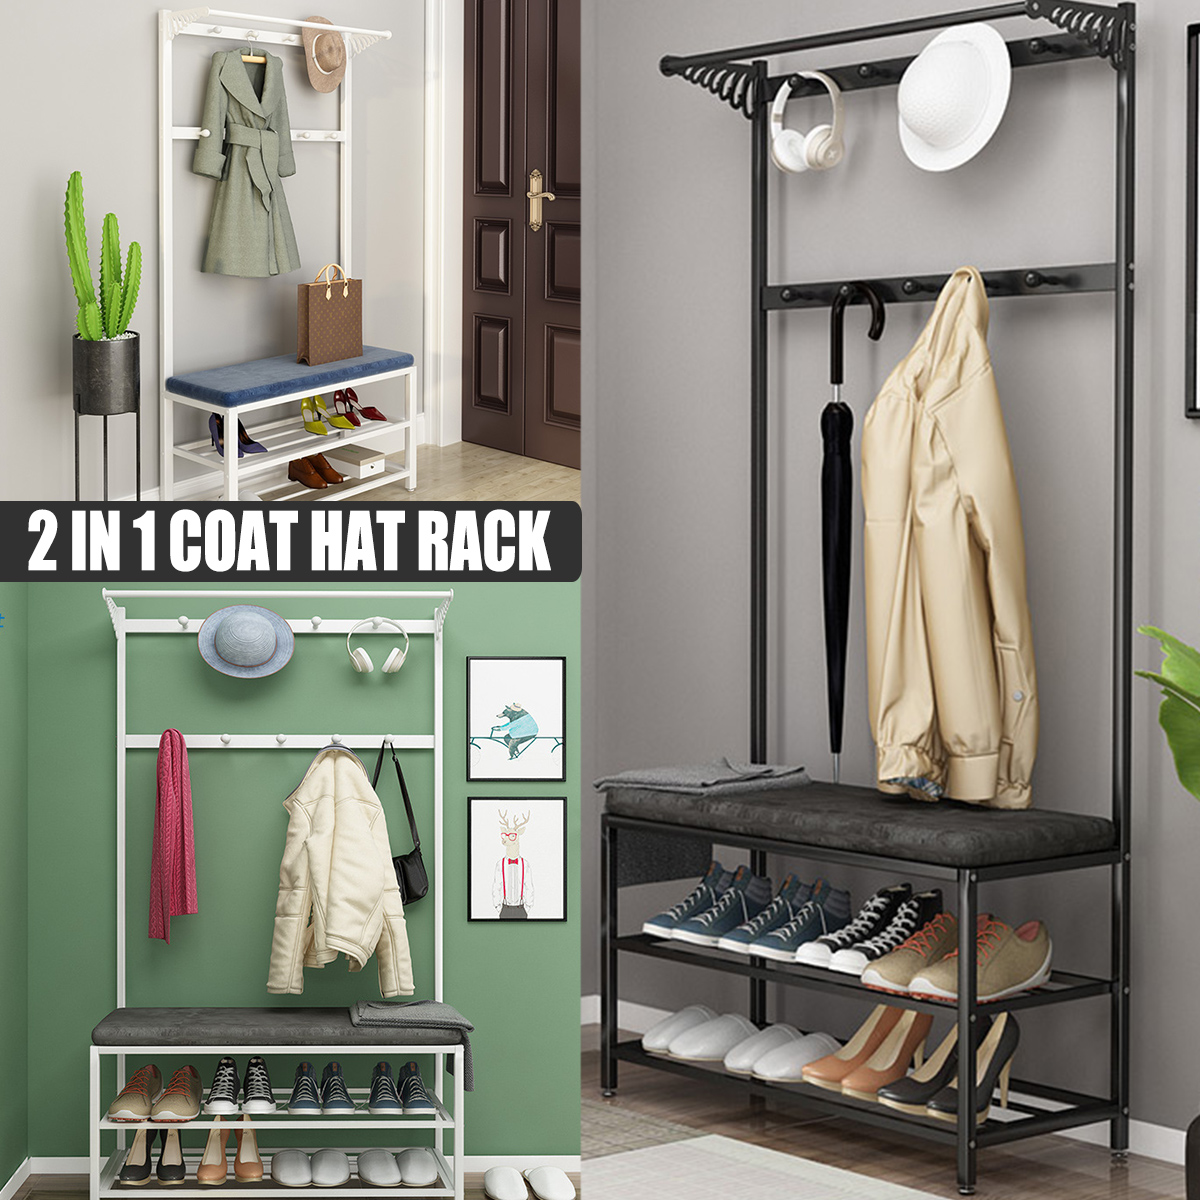 80cm-Coat-Rack-Shoe-Rack-Multifunctional-Storage-Bench-Door-Hat-Clothes-Umbrella-Hangers-Storage-She-1787854-1